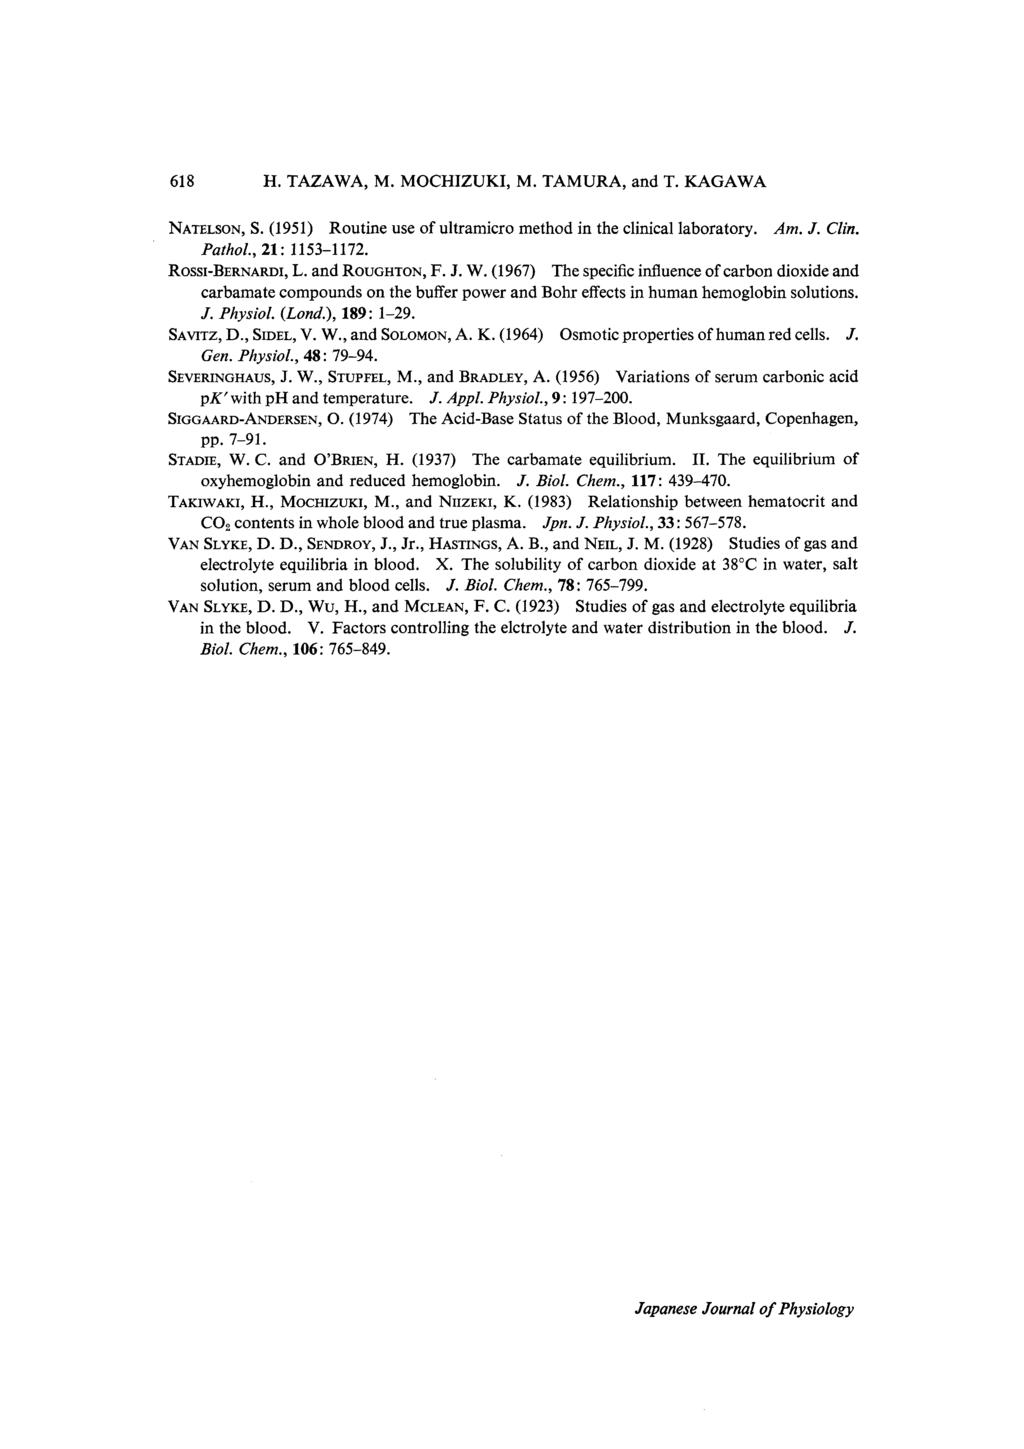 618 H. TAZAWA, M. MOCHIZUKI, M. TAMURA, and T. KAGAWA NATELSON, S. (1951) Routine use of ultramicro method in the clinical laboratory. Am. J. Clin. Pathol., 21:1153-1172.